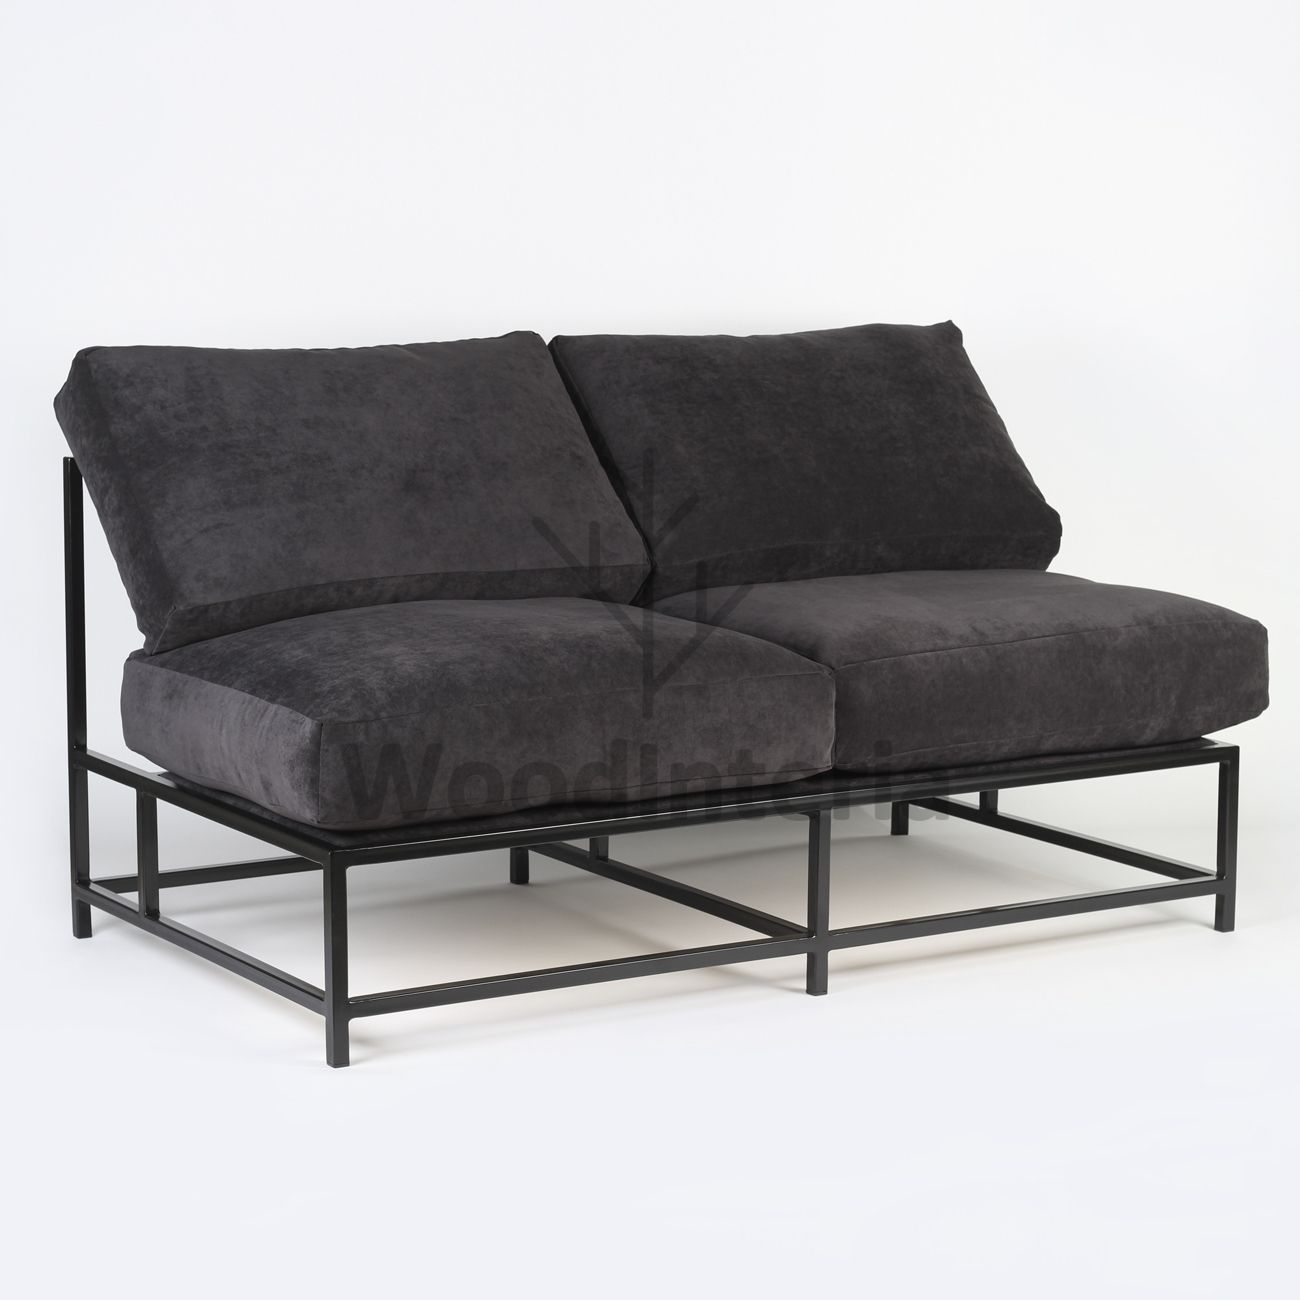 Двухместный диван Loft Frame Armless – купить диван в стиле лофт